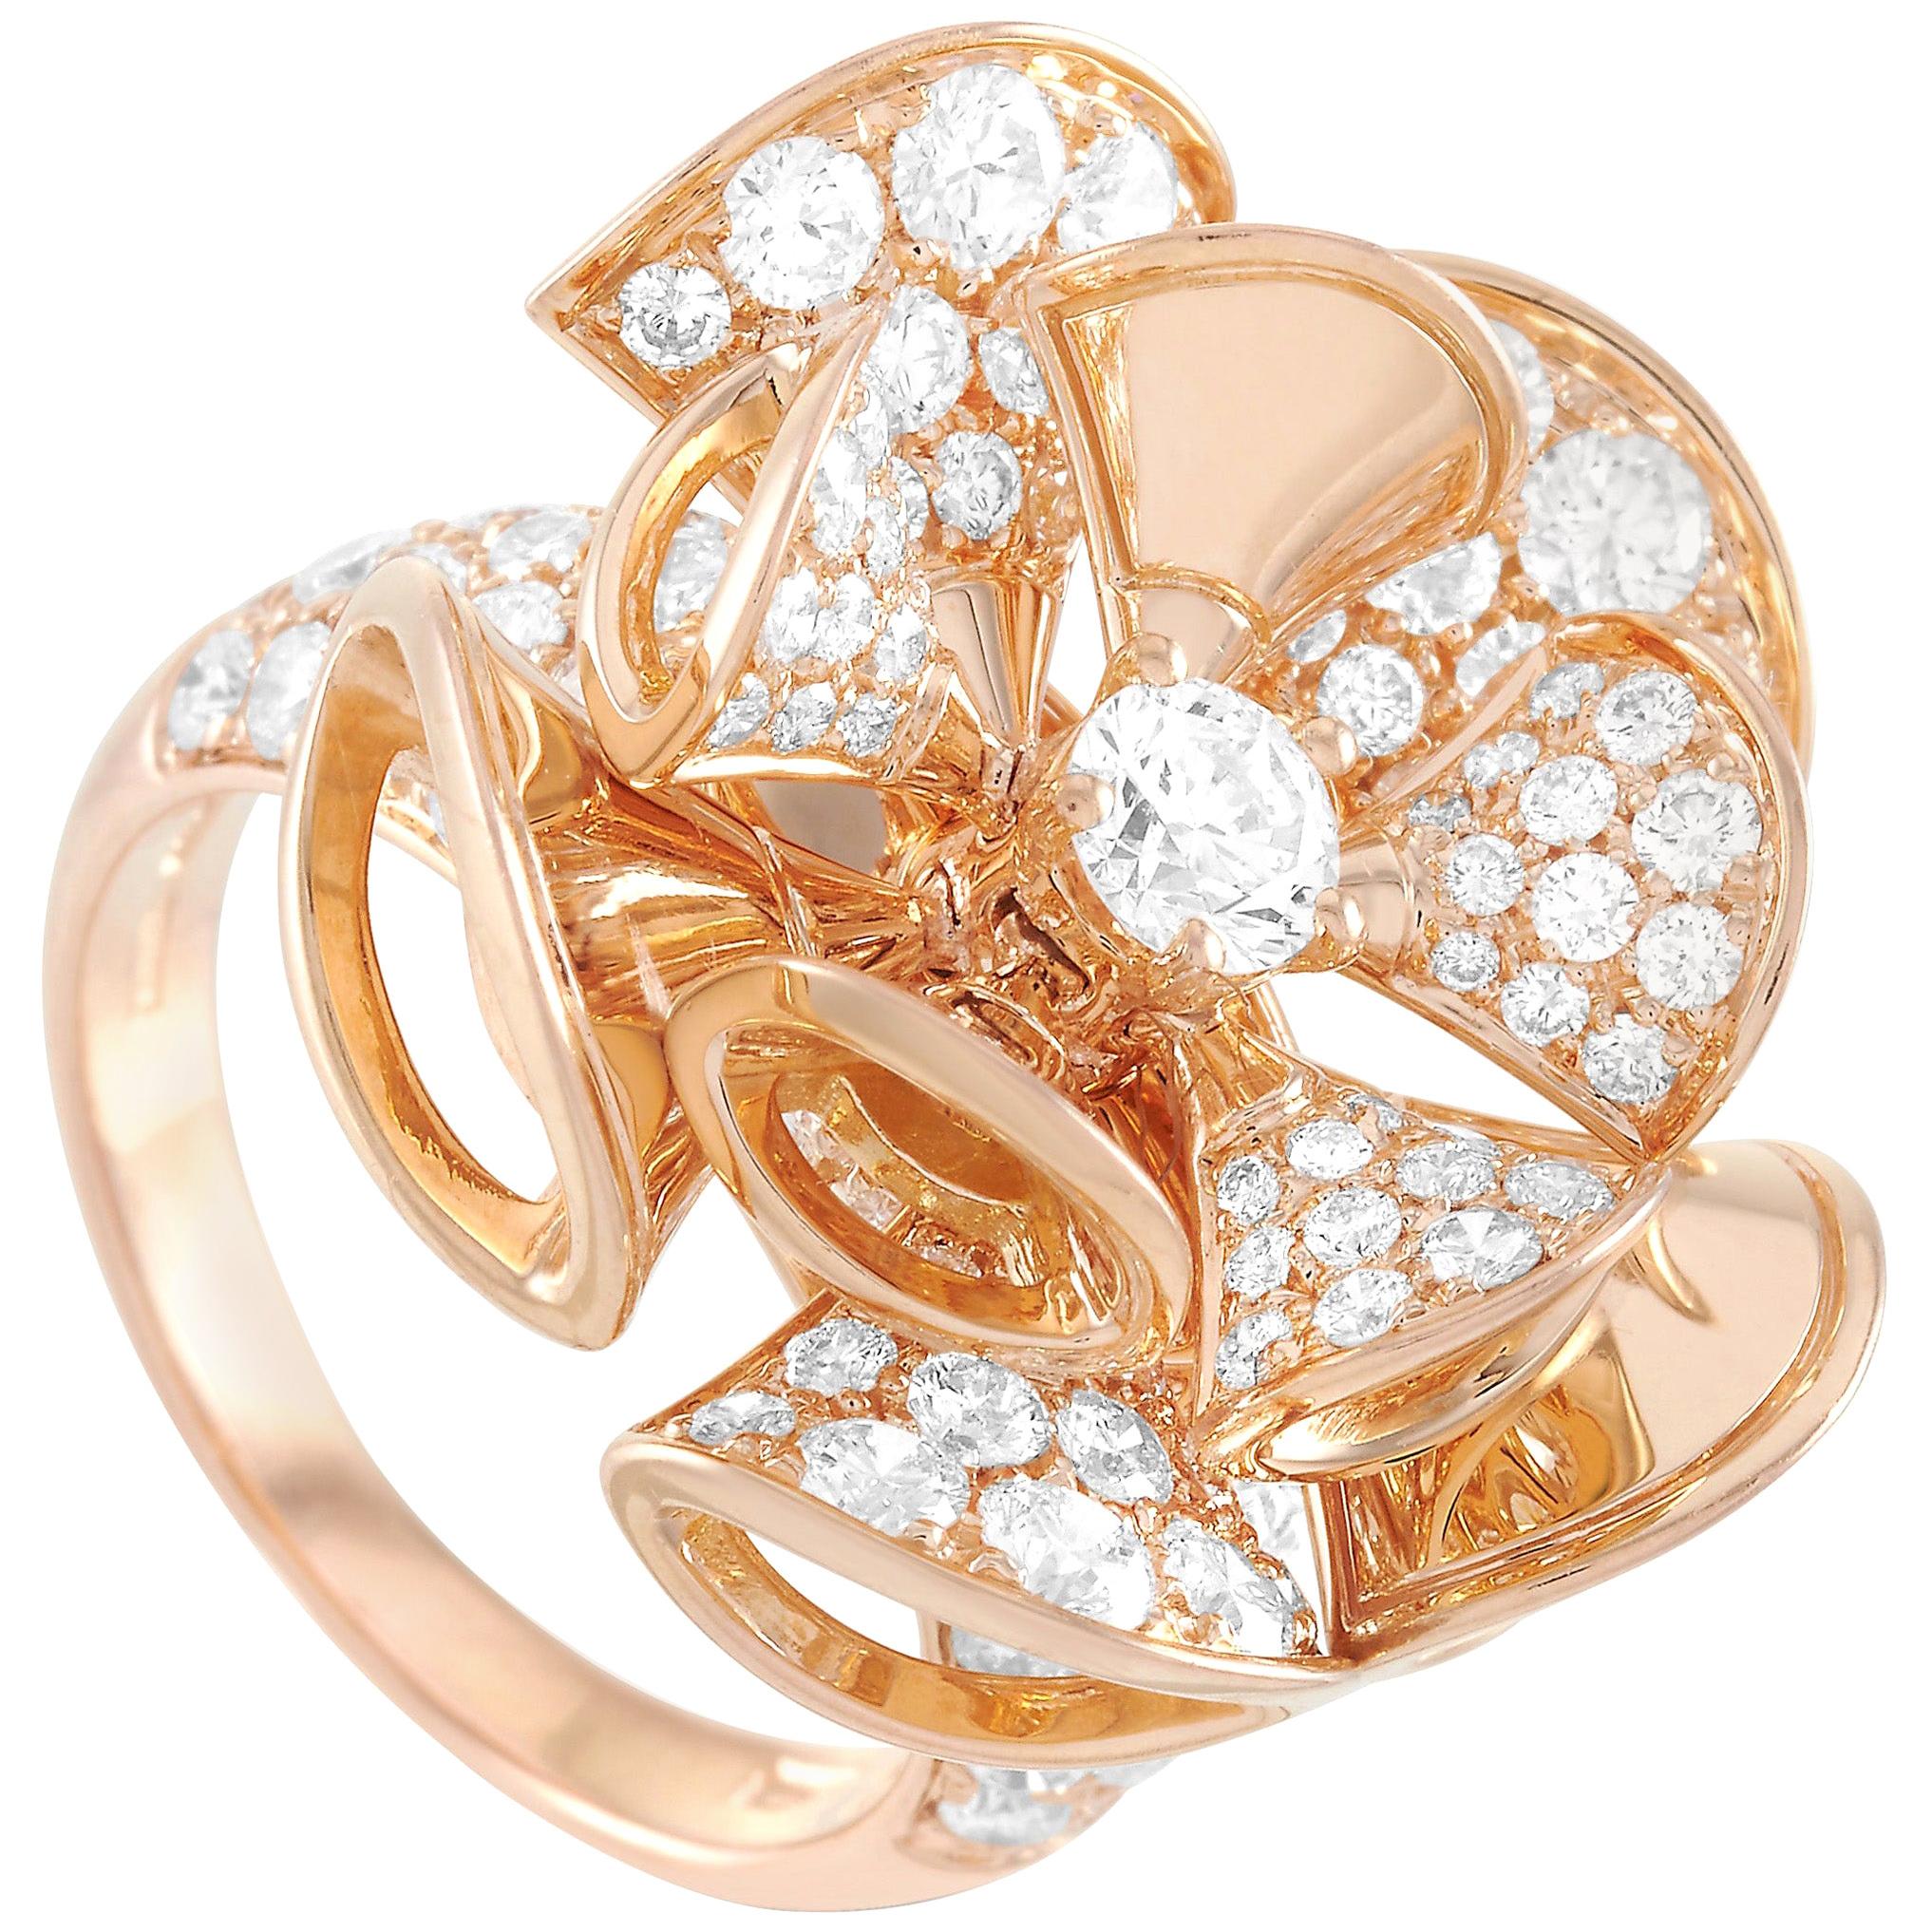 Bvlgari Divas' Dream 18 Karat Rose Gold 3.20 Carat Diamond Ring